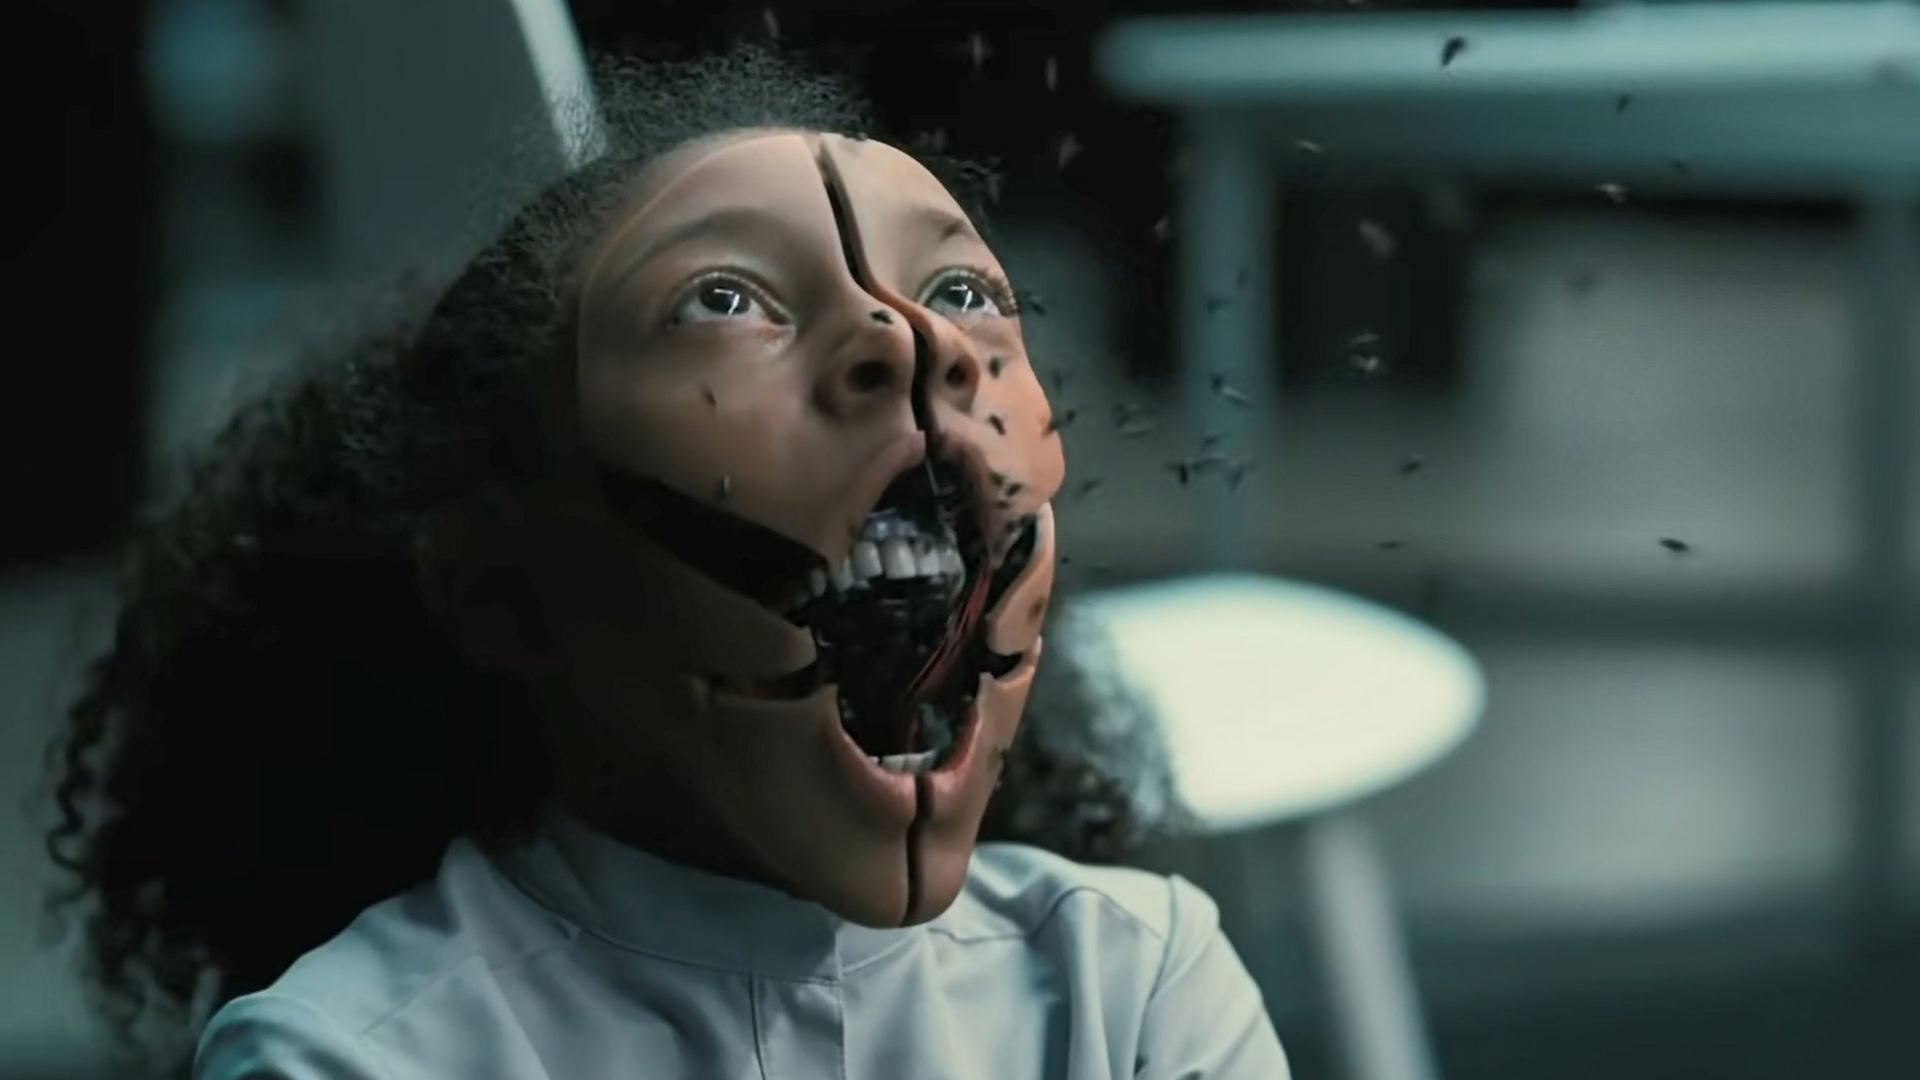 خارج شدن مگس از دهان یک ربات در فصل چهارم سریال Westworld